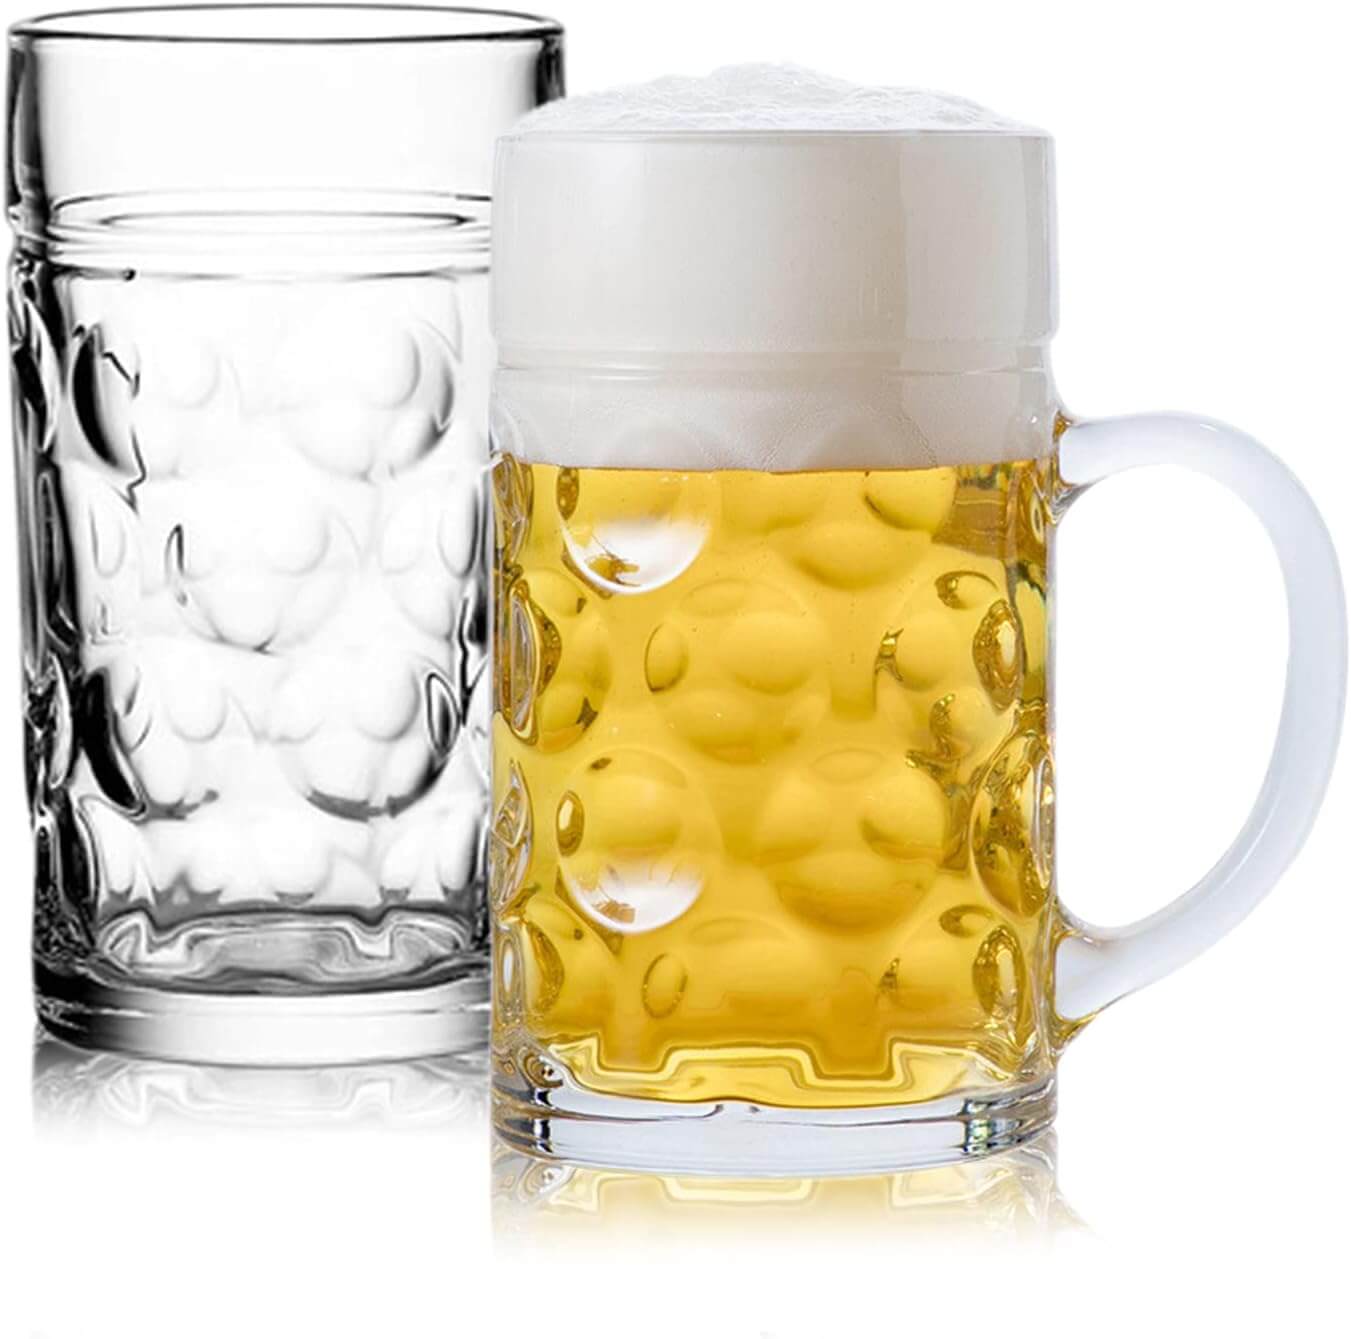 Jumbo glass Stein beer mugs